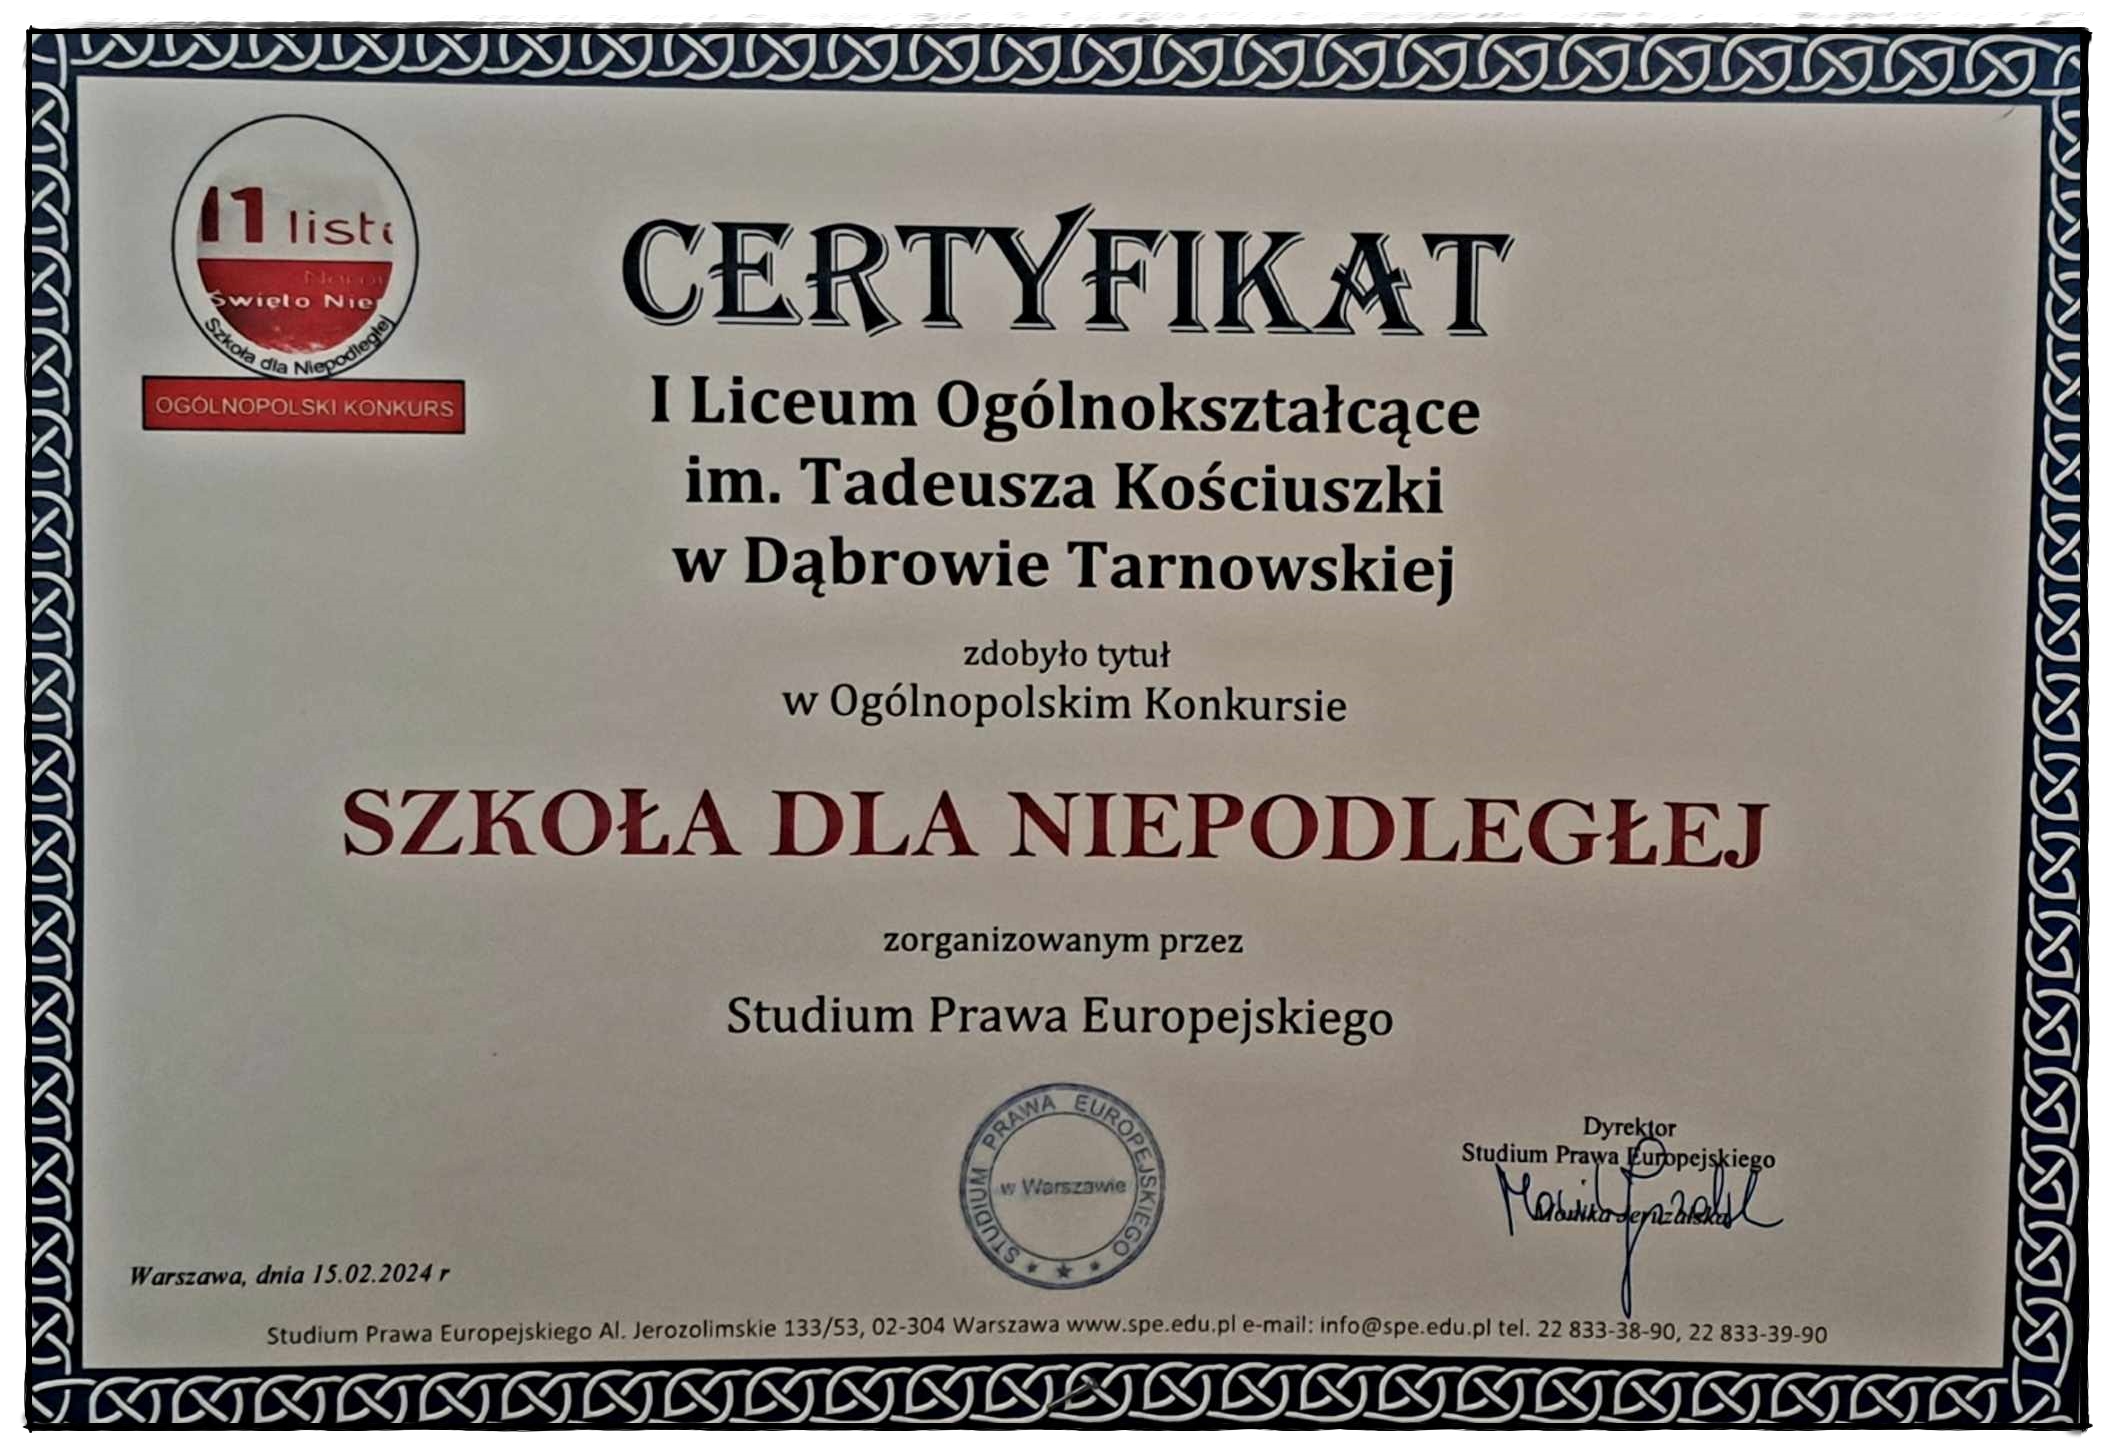 I Liceum Ogólnokształcące im. T. Kościuszki z certyfikatem Szkoły dla Niepodległej